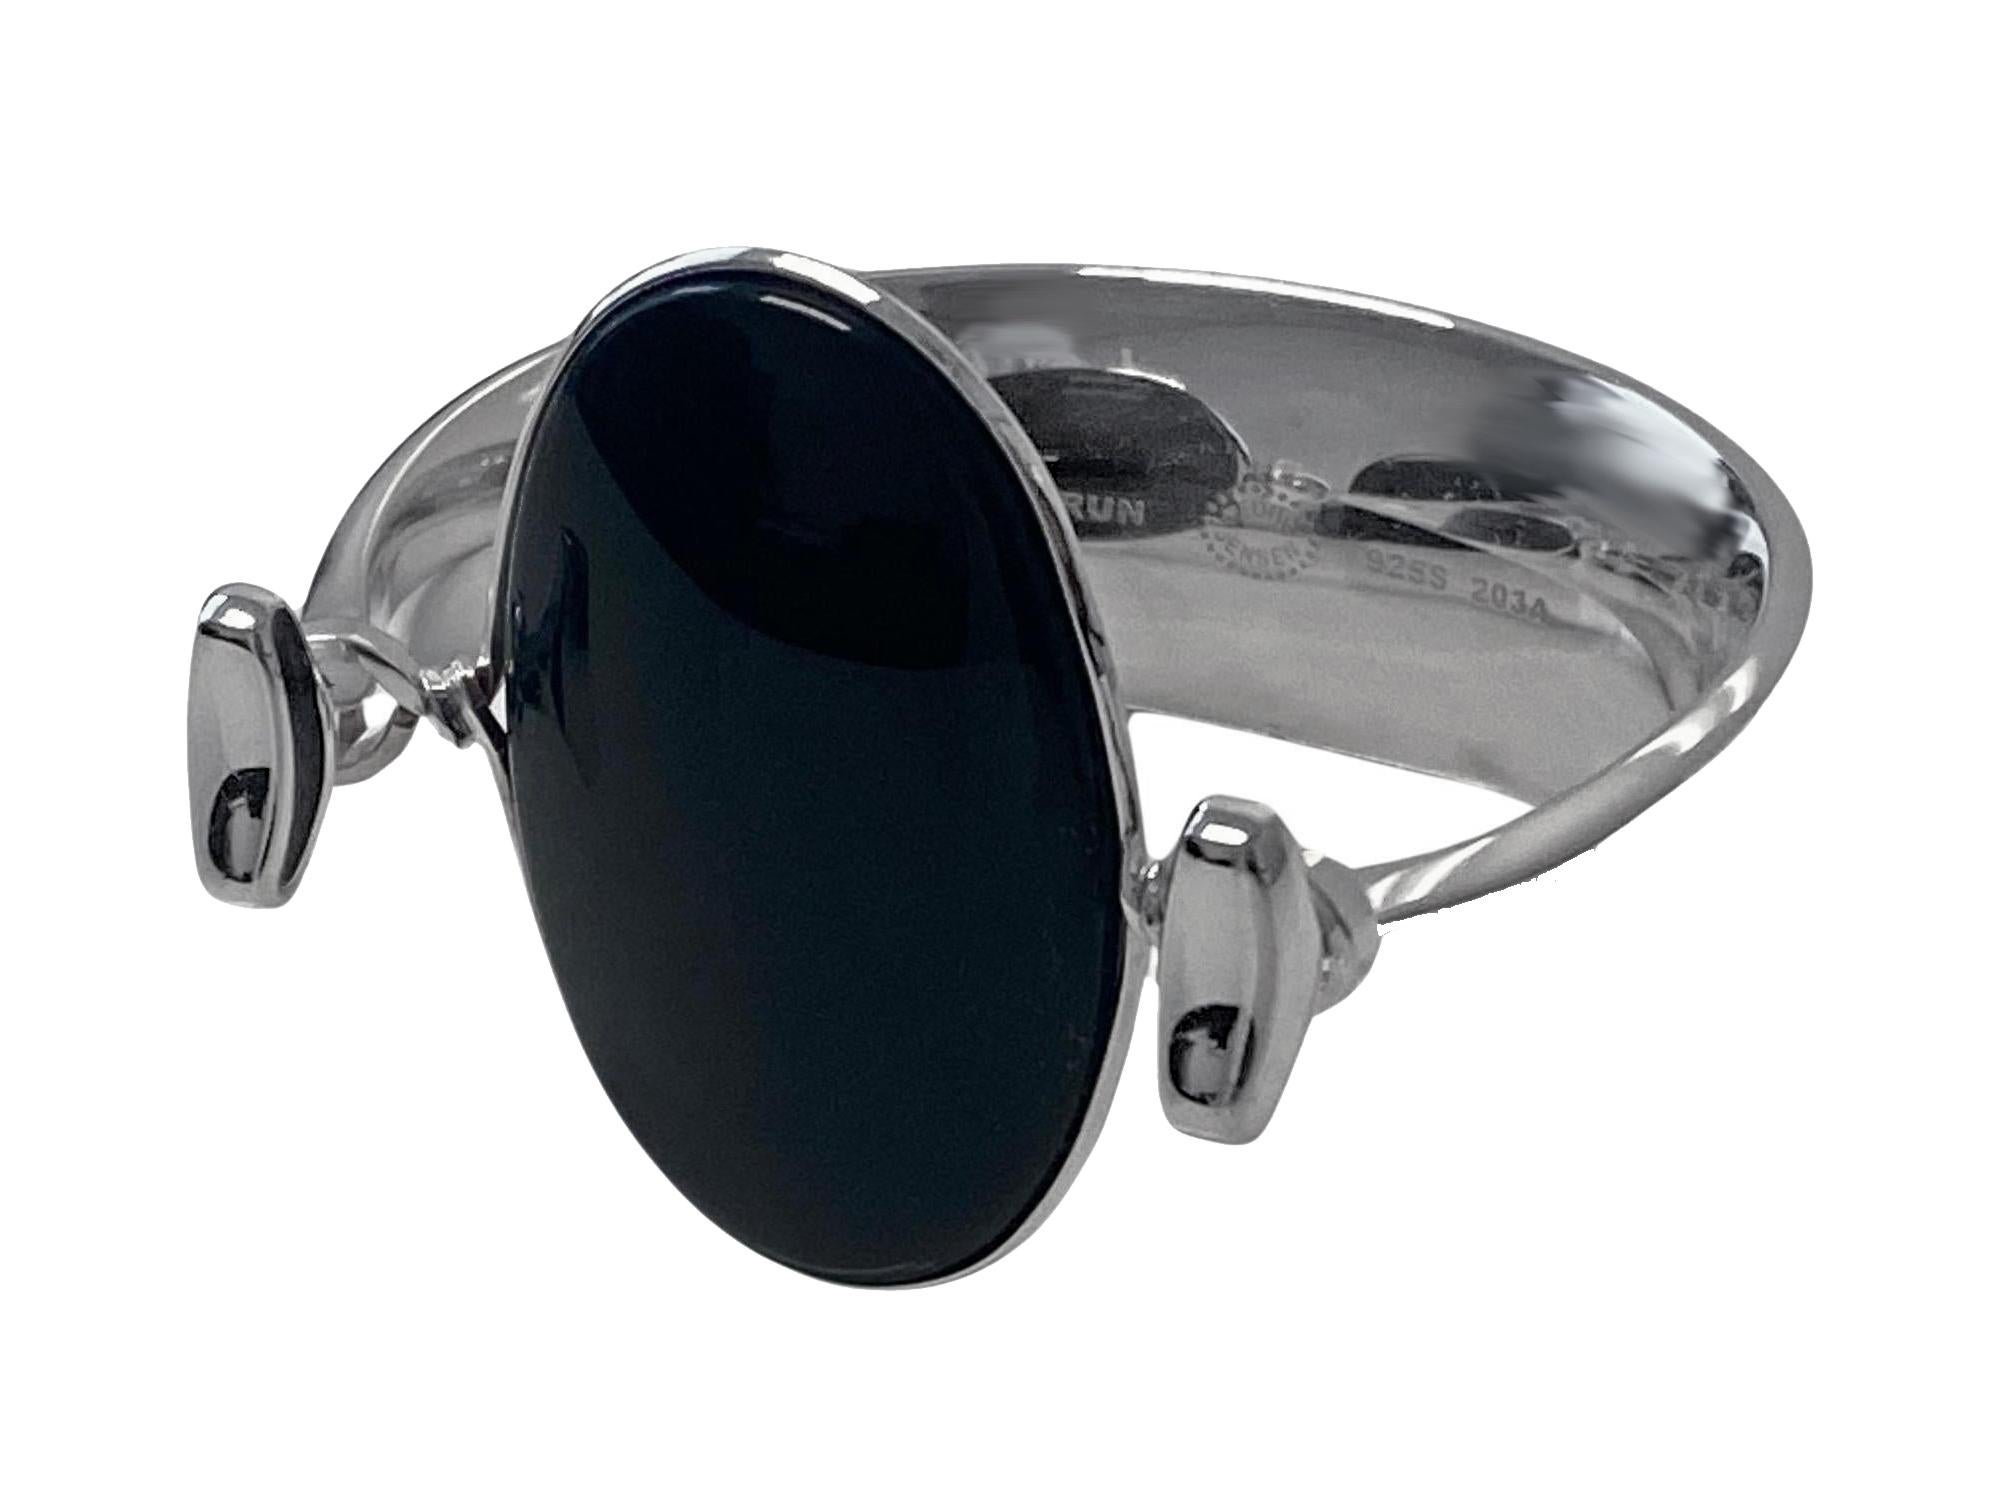 Georg Jensen Bracelet avec onyx noir modèle # 203A Design/One Bülow-Hübe C.C. 1969. S'adapte à la plupart des poignets jusqu'à 6,5 pouces, ouverture de la pince de tension. Le cabochon d'onyx poli mesure environ : 4,50 x 3,00 cm. Estampillé avec :